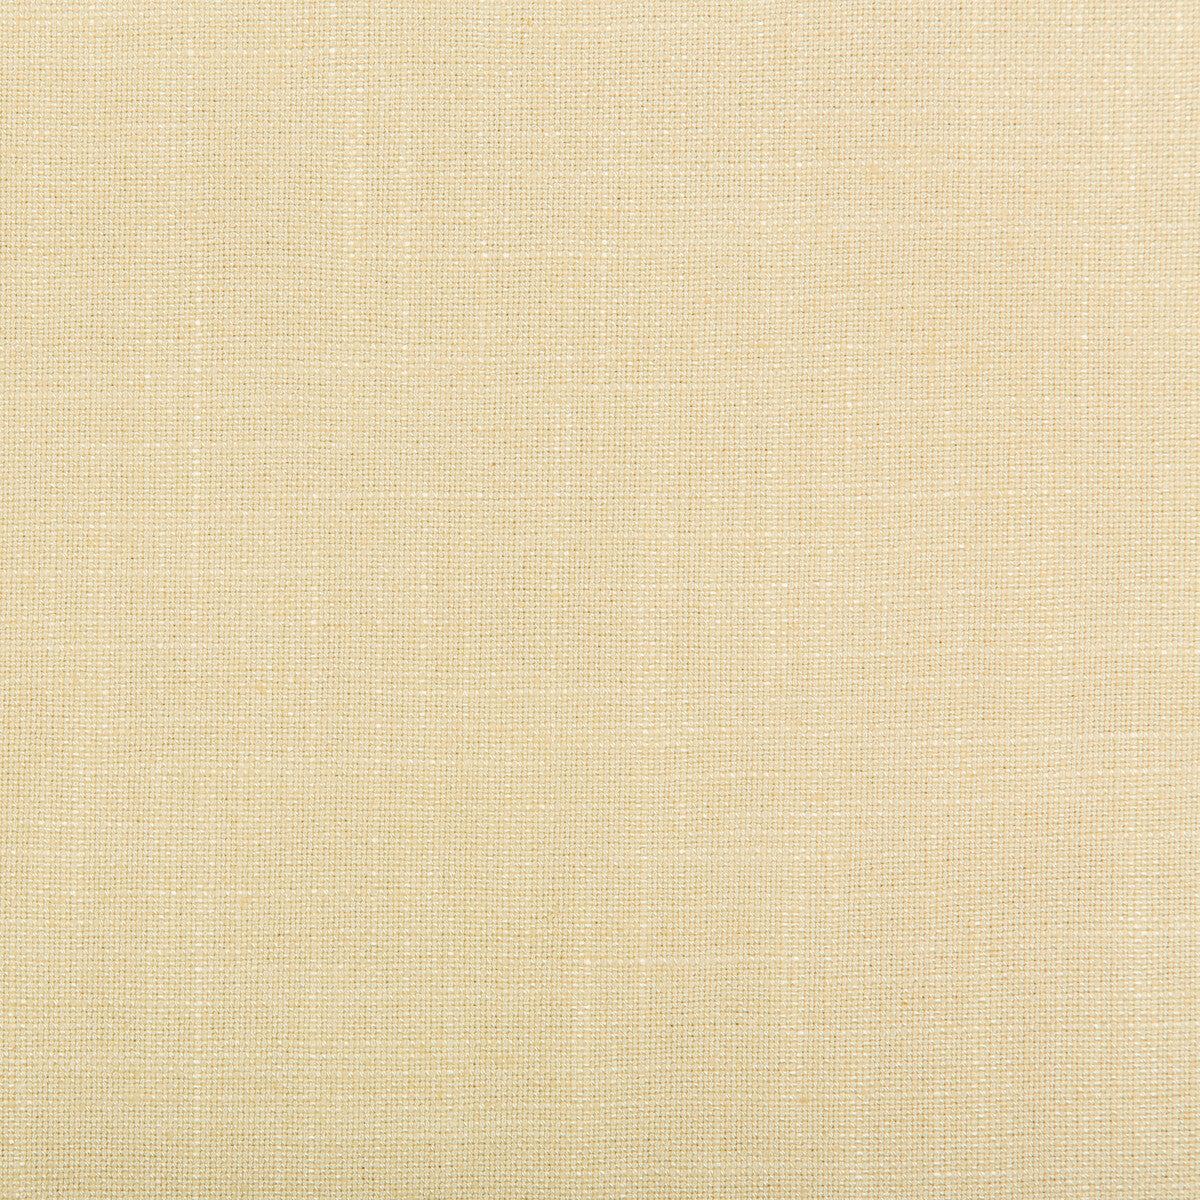 Aura fabric in frappe color - pattern 35520.1416.0 - by Kravet Design